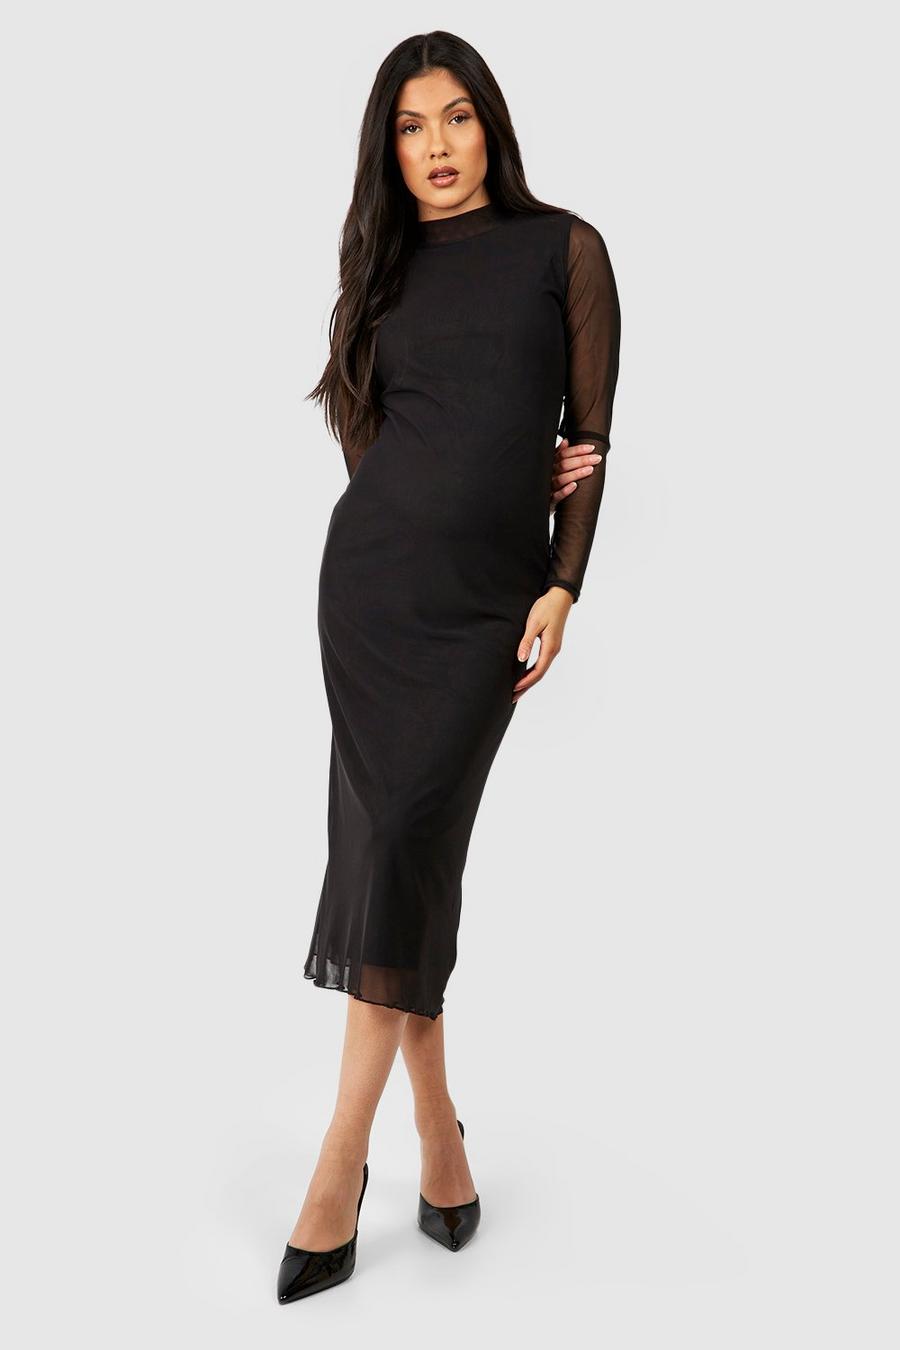 Black Lång gravidklänning i mesh med hög hals